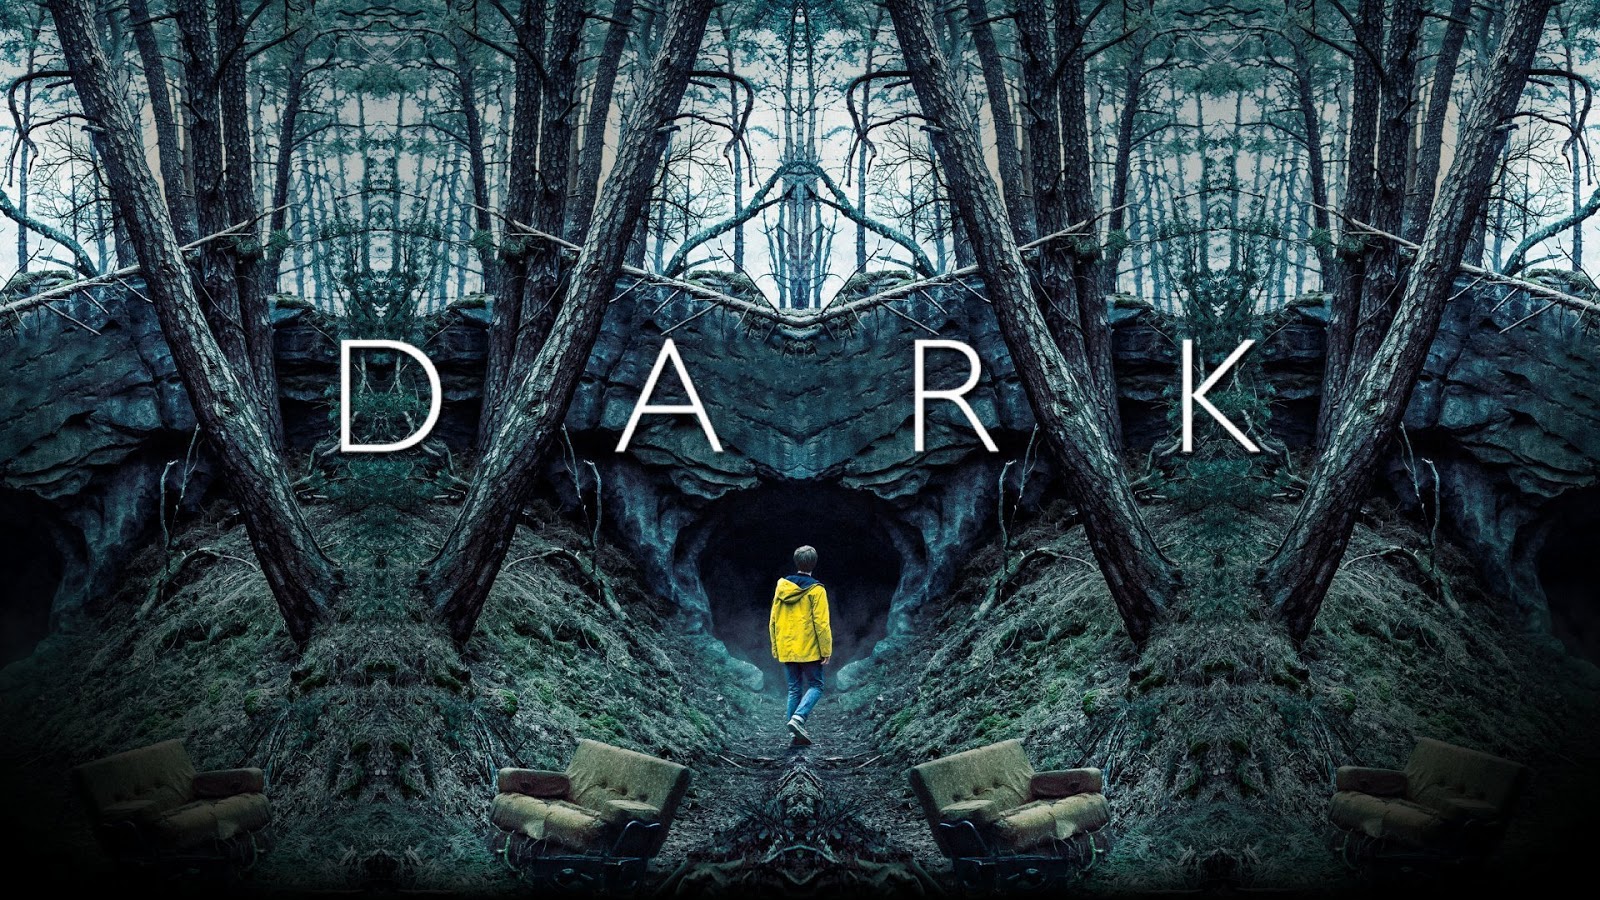 dark-season-3